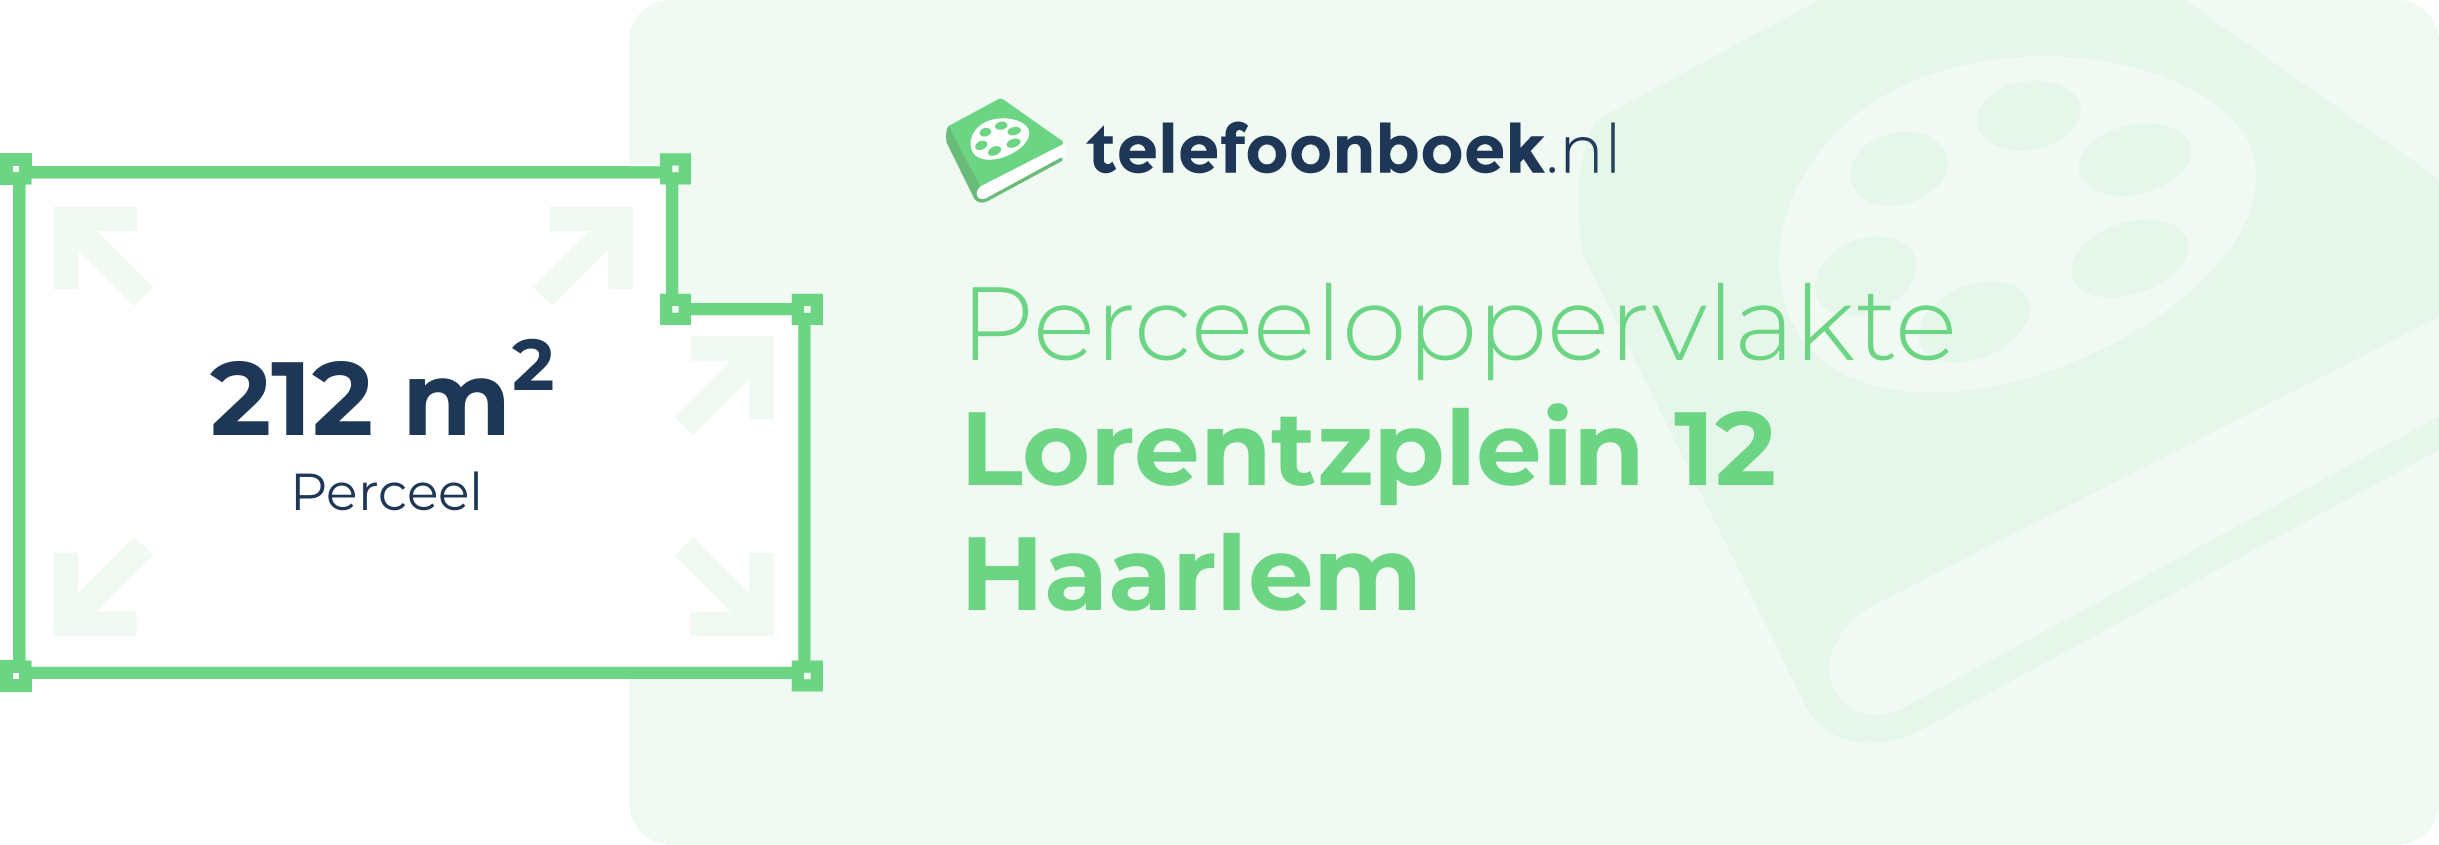 Perceeloppervlakte Lorentzplein 12 Haarlem